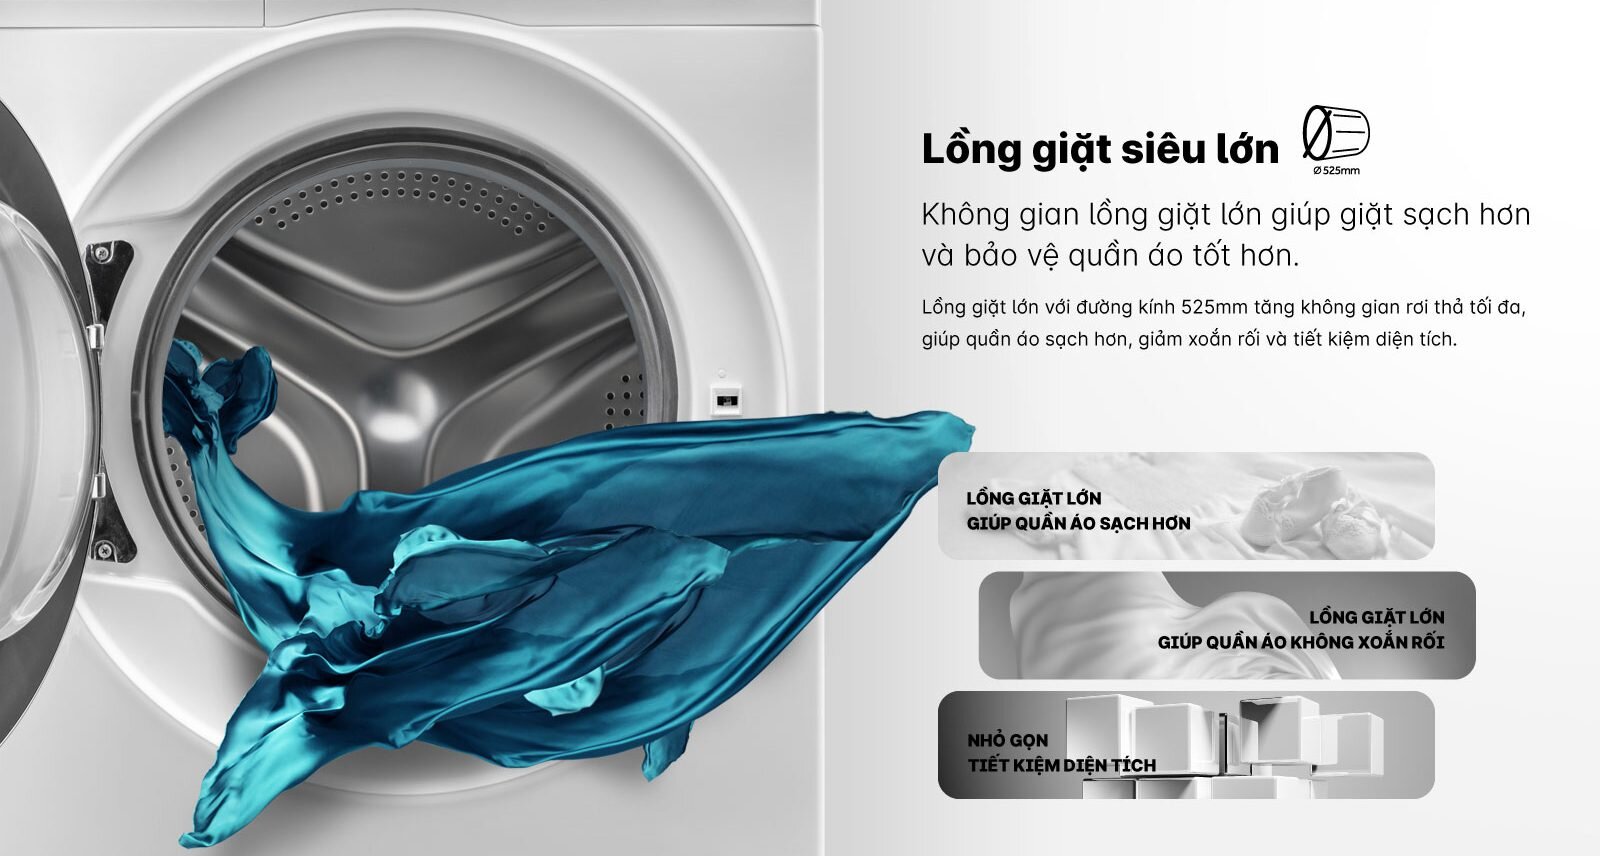 Máy giặt Aqua với thiết kế cửa ngang tiện lợi